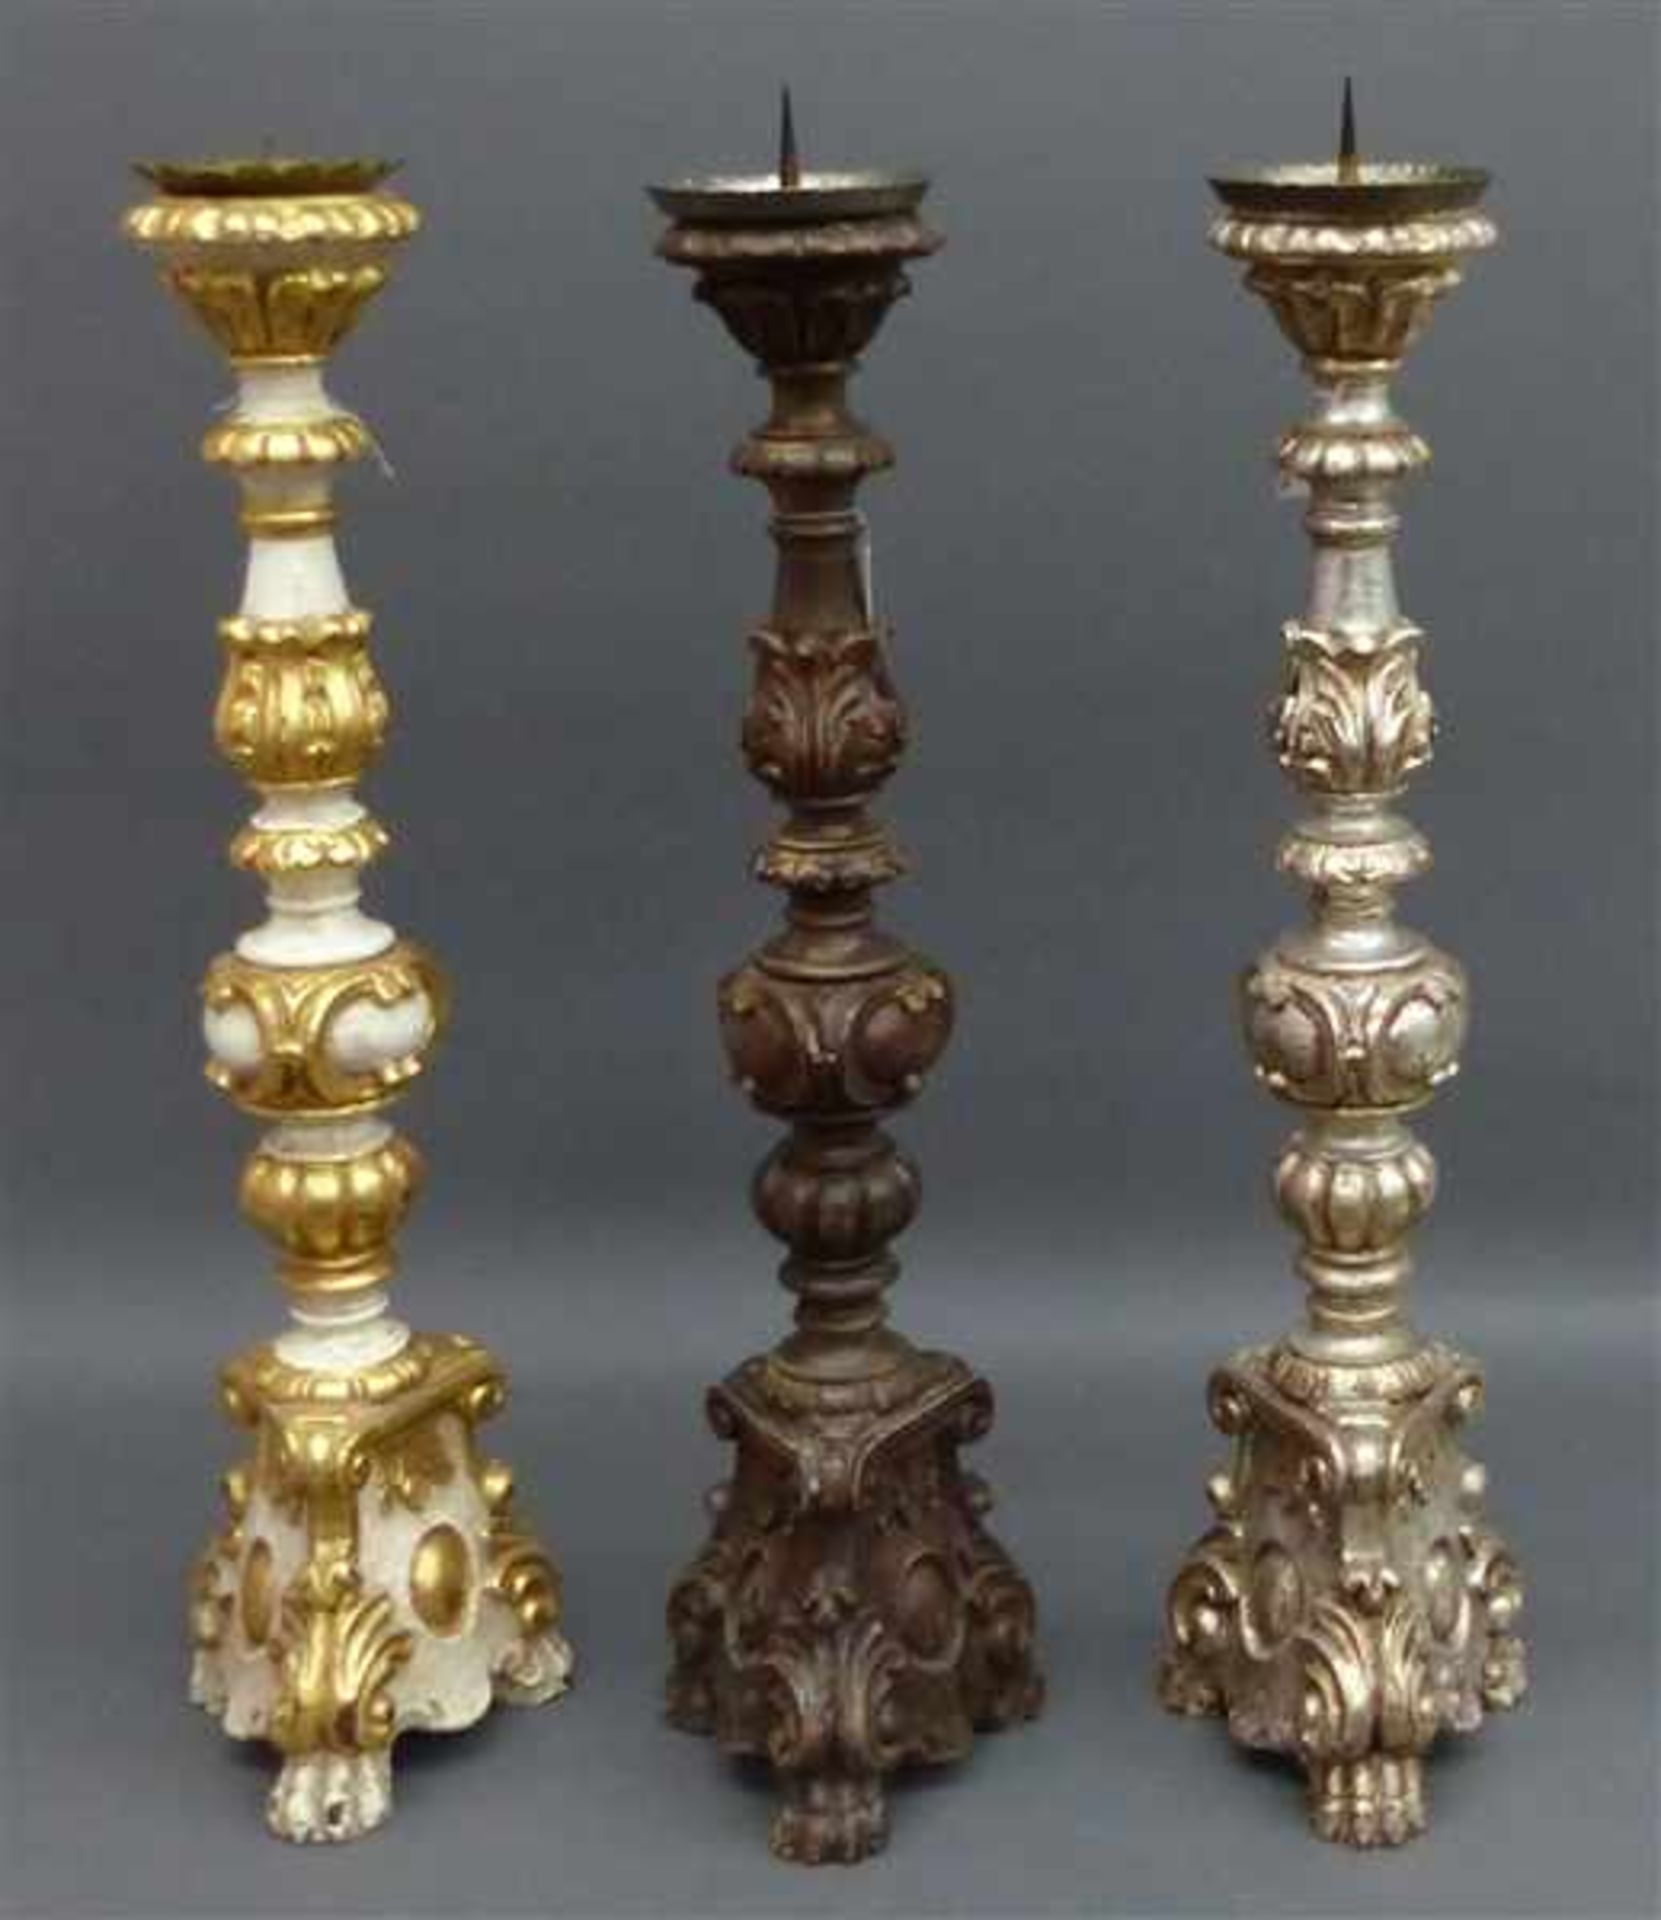 3 AltarleuchterHolz, geschnitzt, teilweise gefasst, 1x natur, 1x versilbert, 1x Gold/Weiß, 20.